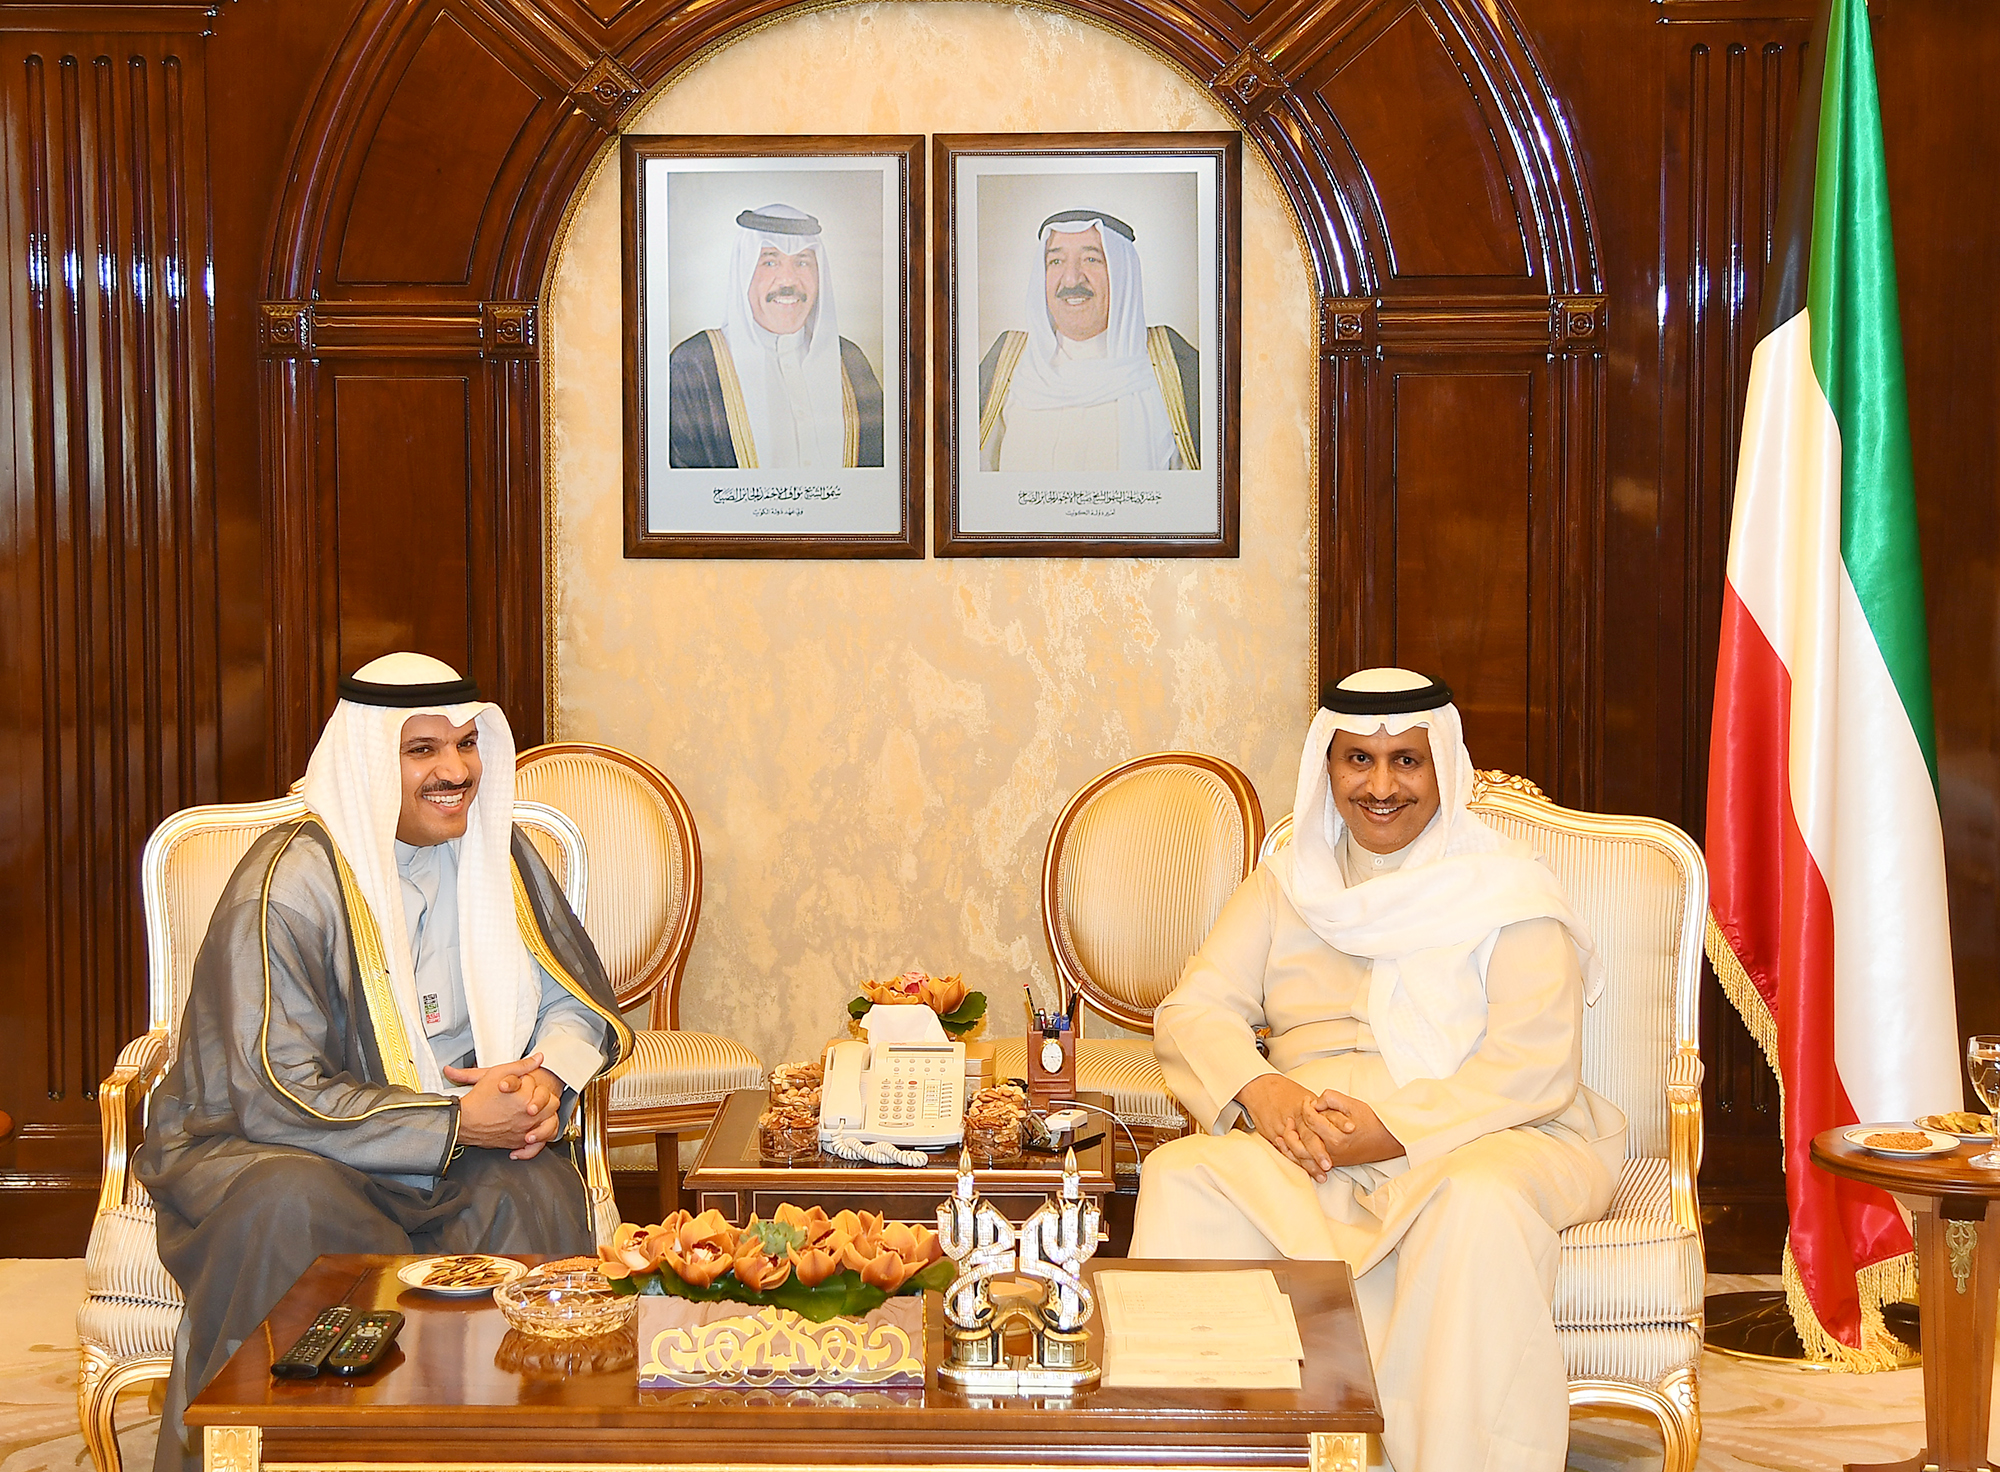 His Highness the Prime Minister Sheikh Jaber Al-Mubarak Al-Hamad Al-Sabah received Central Bank of Kuwait (CBK) Governor Dr. Mohammad Al-Hashel